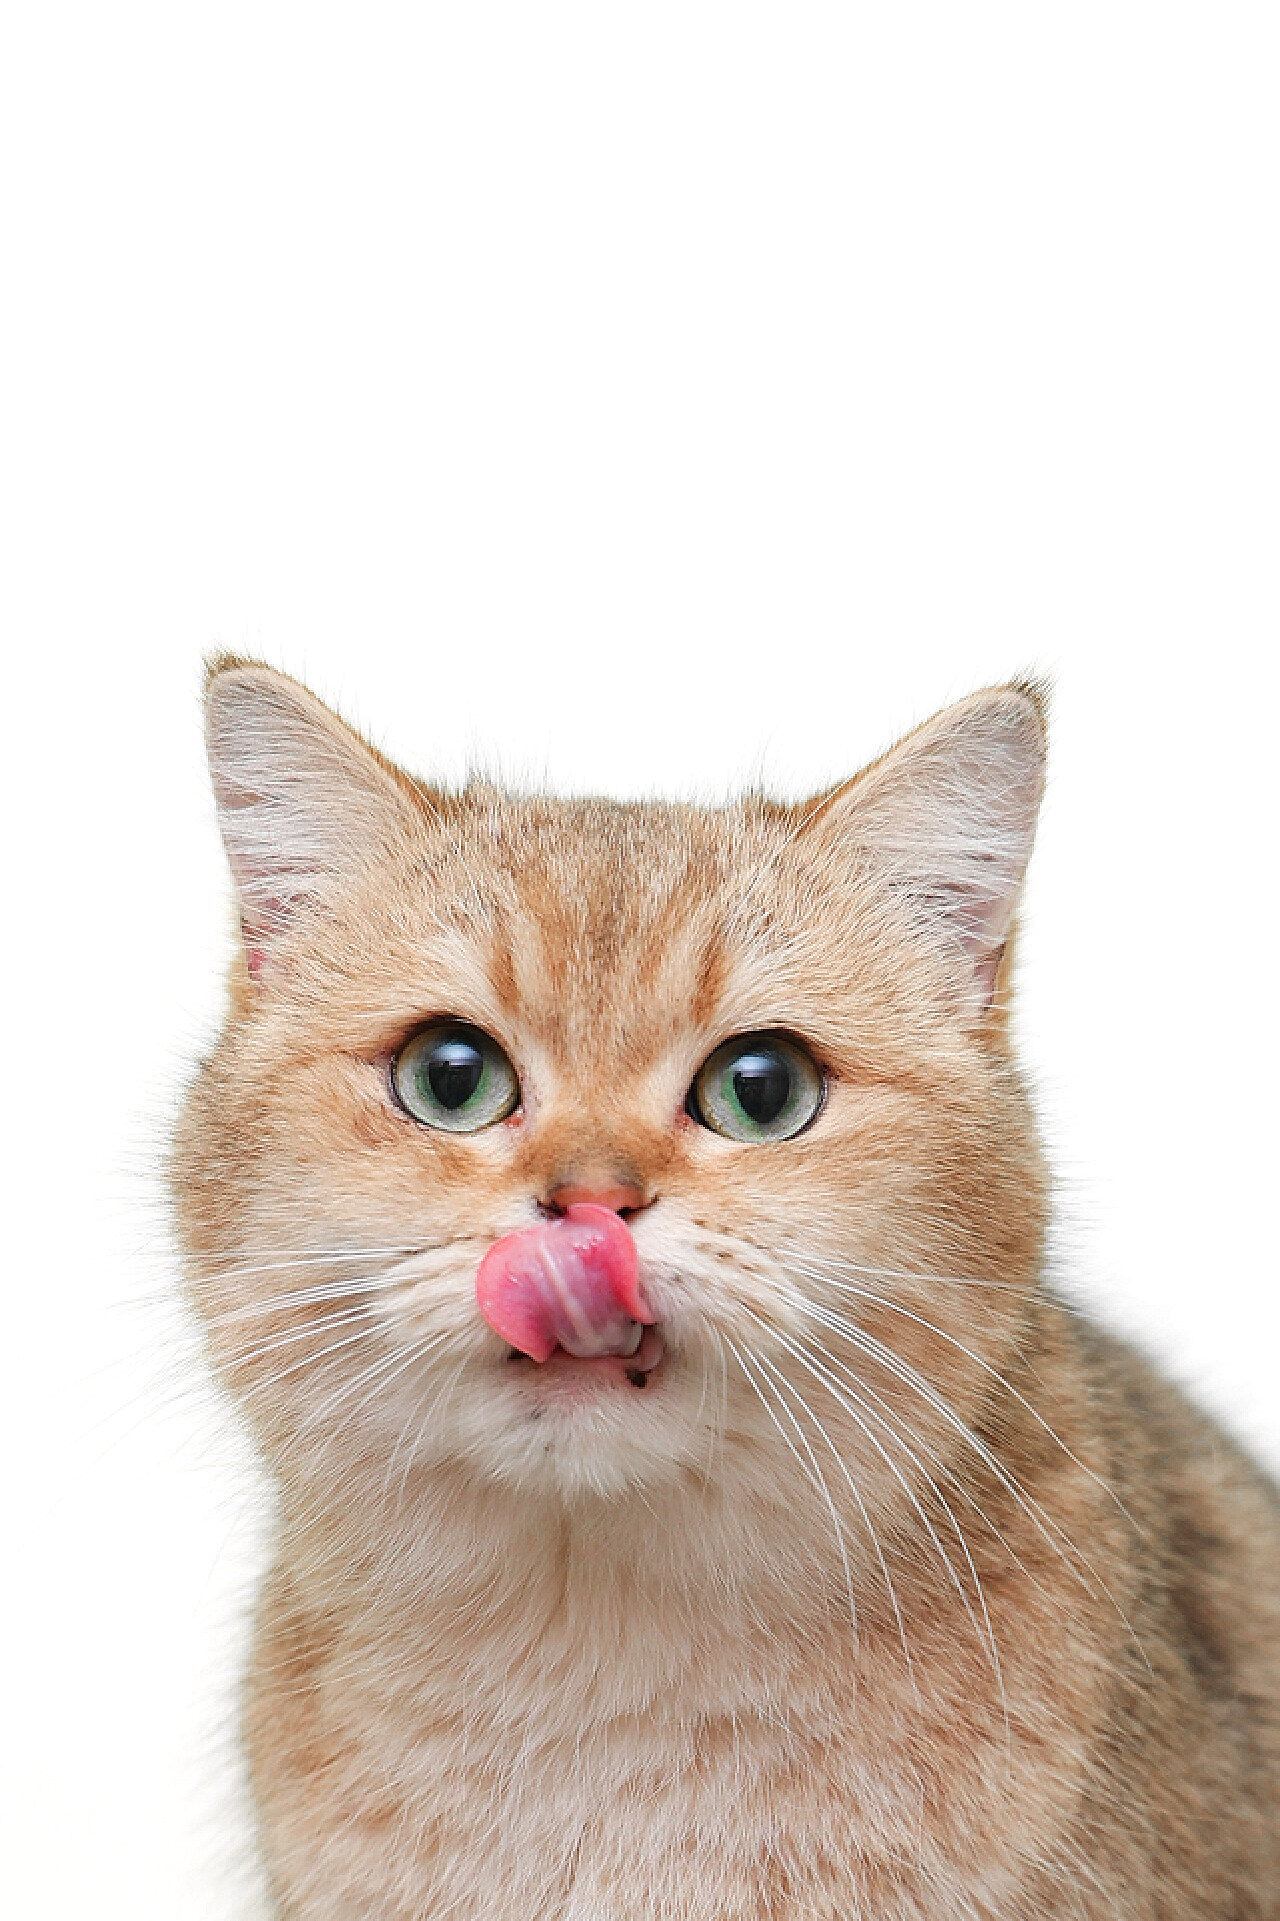 伸舌头的小猫可爱壁纸-壁纸图片大全